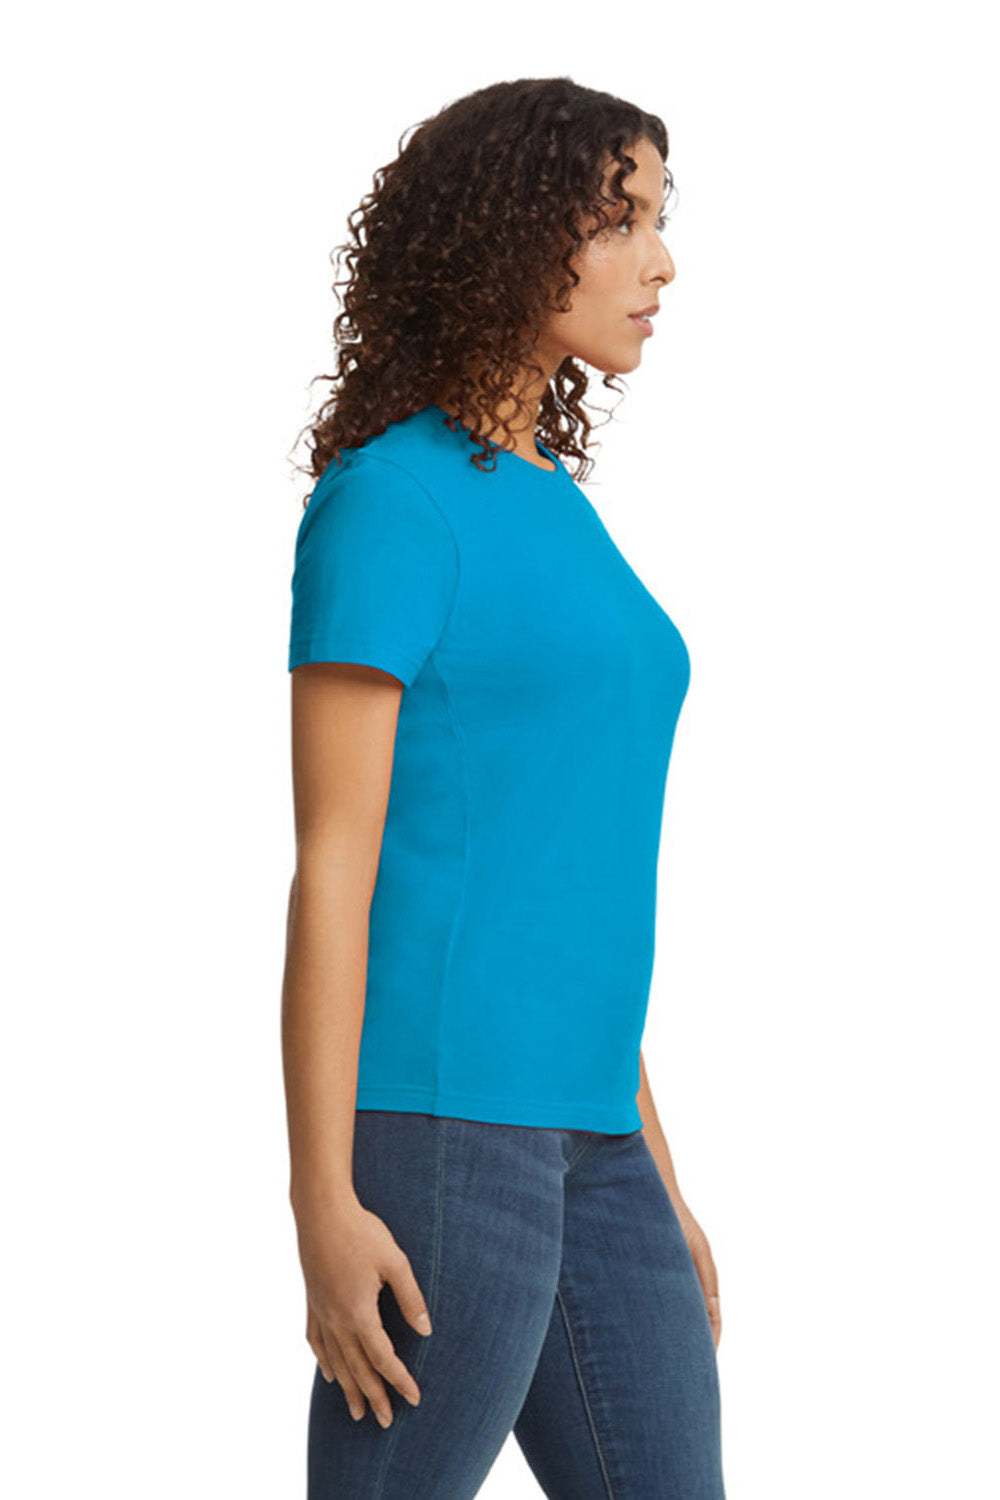 Gildan G650L Womens Softstyle Short Sleeve Crewneck T-Shirt Sapphire Blue Side